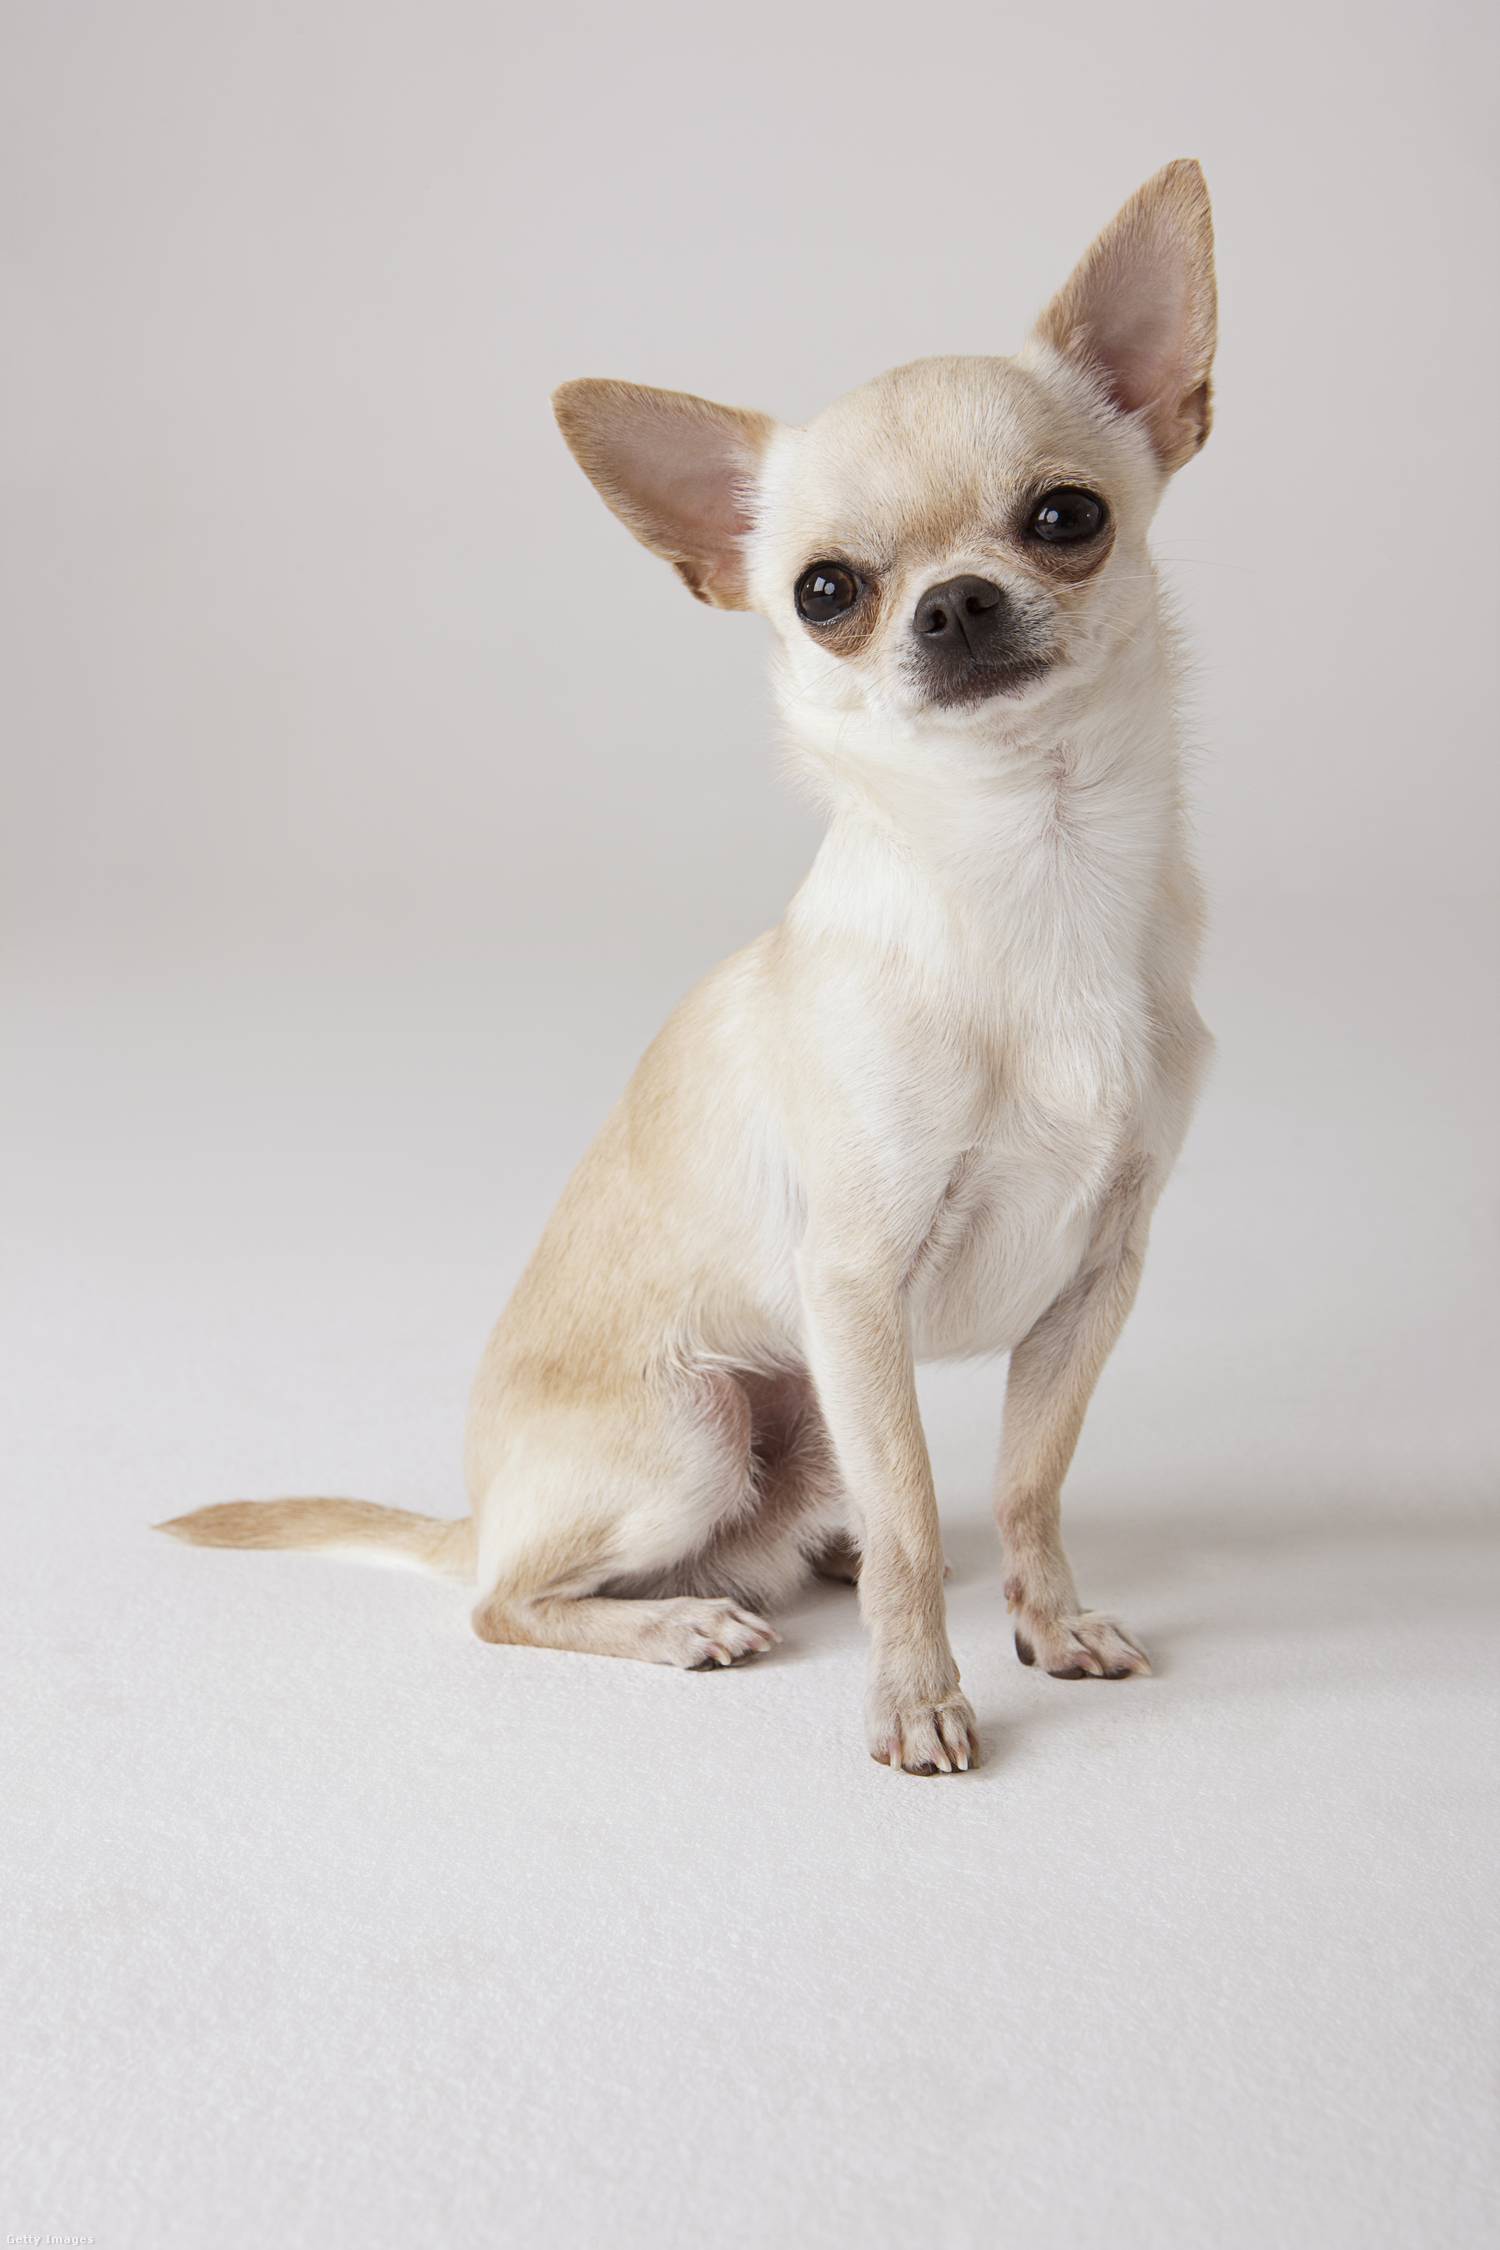 A csivavát tartják a világ legkisebb kutyafajtájának, ideális súlya 1,5-3 kg között van, mérete 15-23 centis.